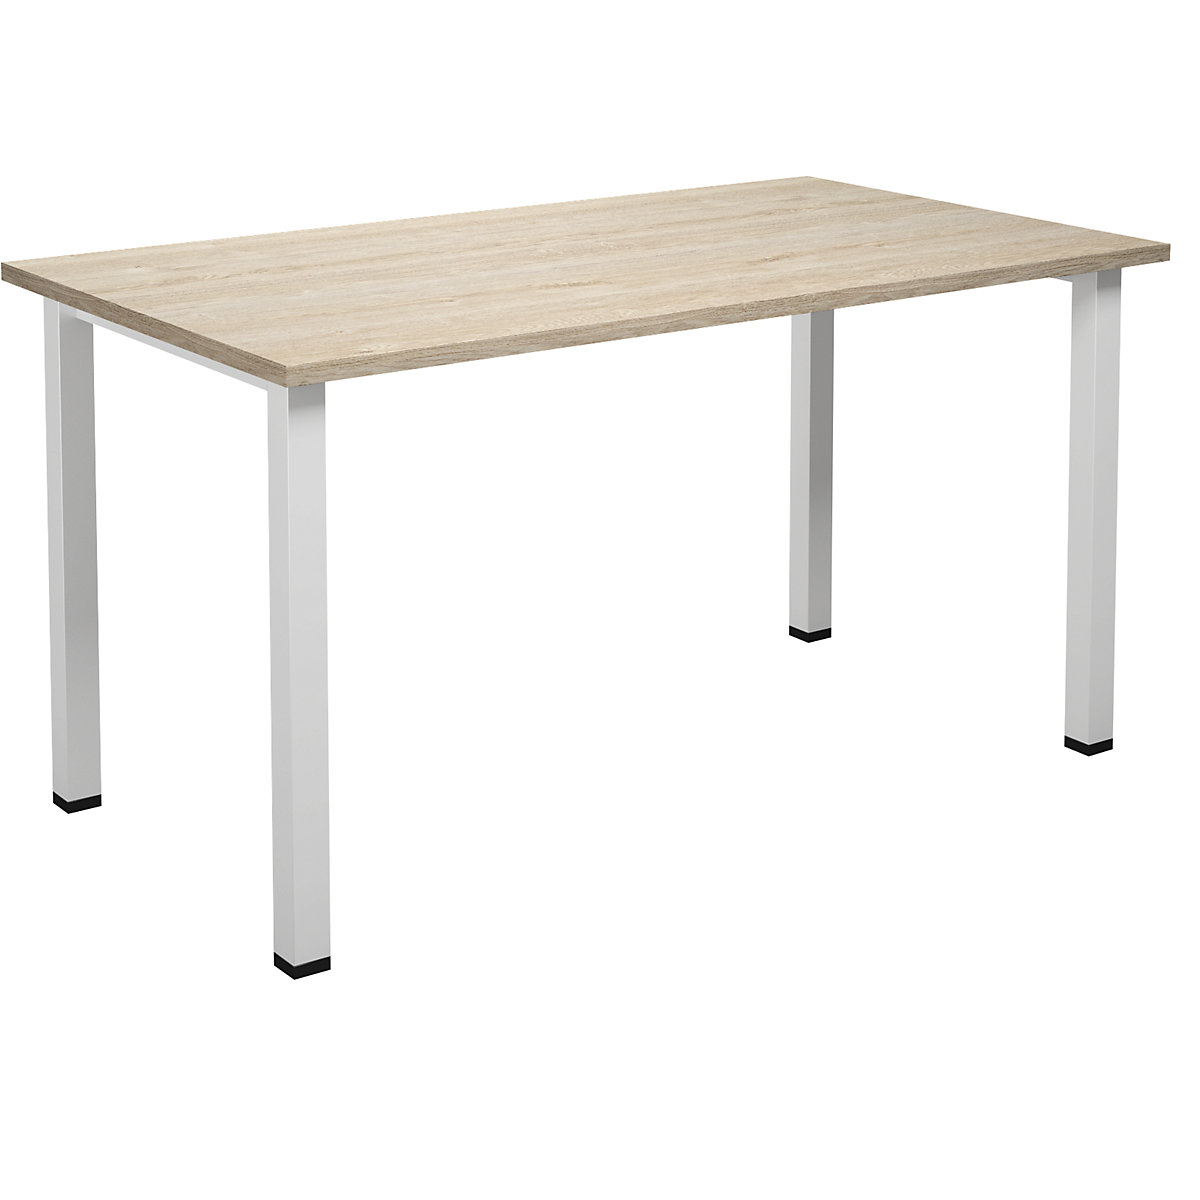 DUO-U multi-purpose desk, straight tabletop, WxD 1400 x 800 mm, oak, oak-4